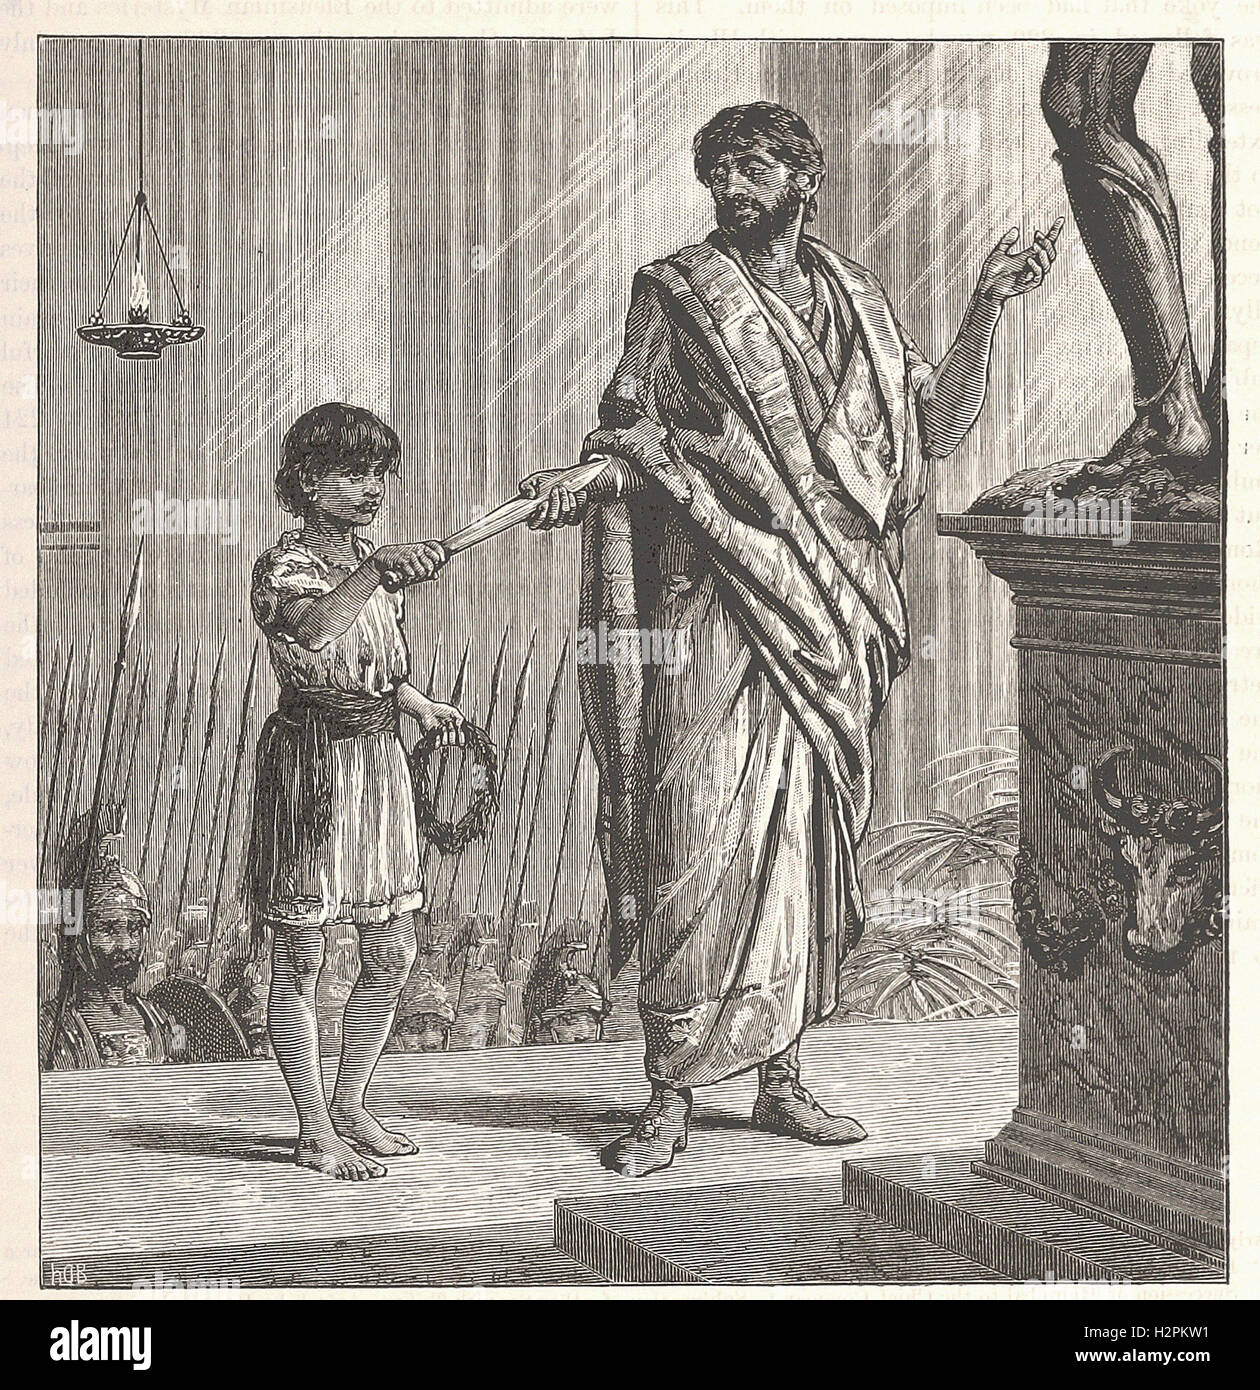 Le VŒU D'HANNIBAL - de 'Cassell's Illustrated Histoire universelle" - 1882 Banque D'Images